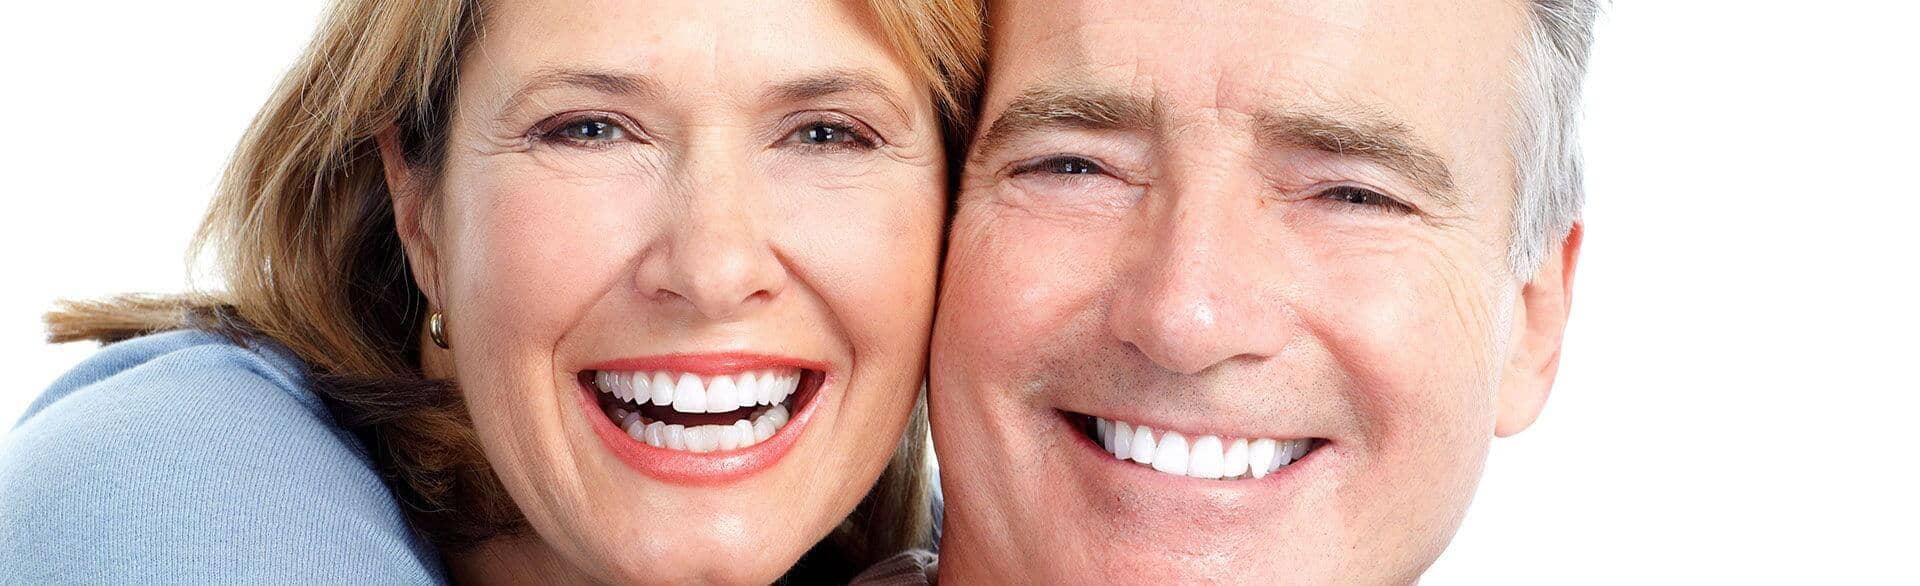 happy, smiling couple